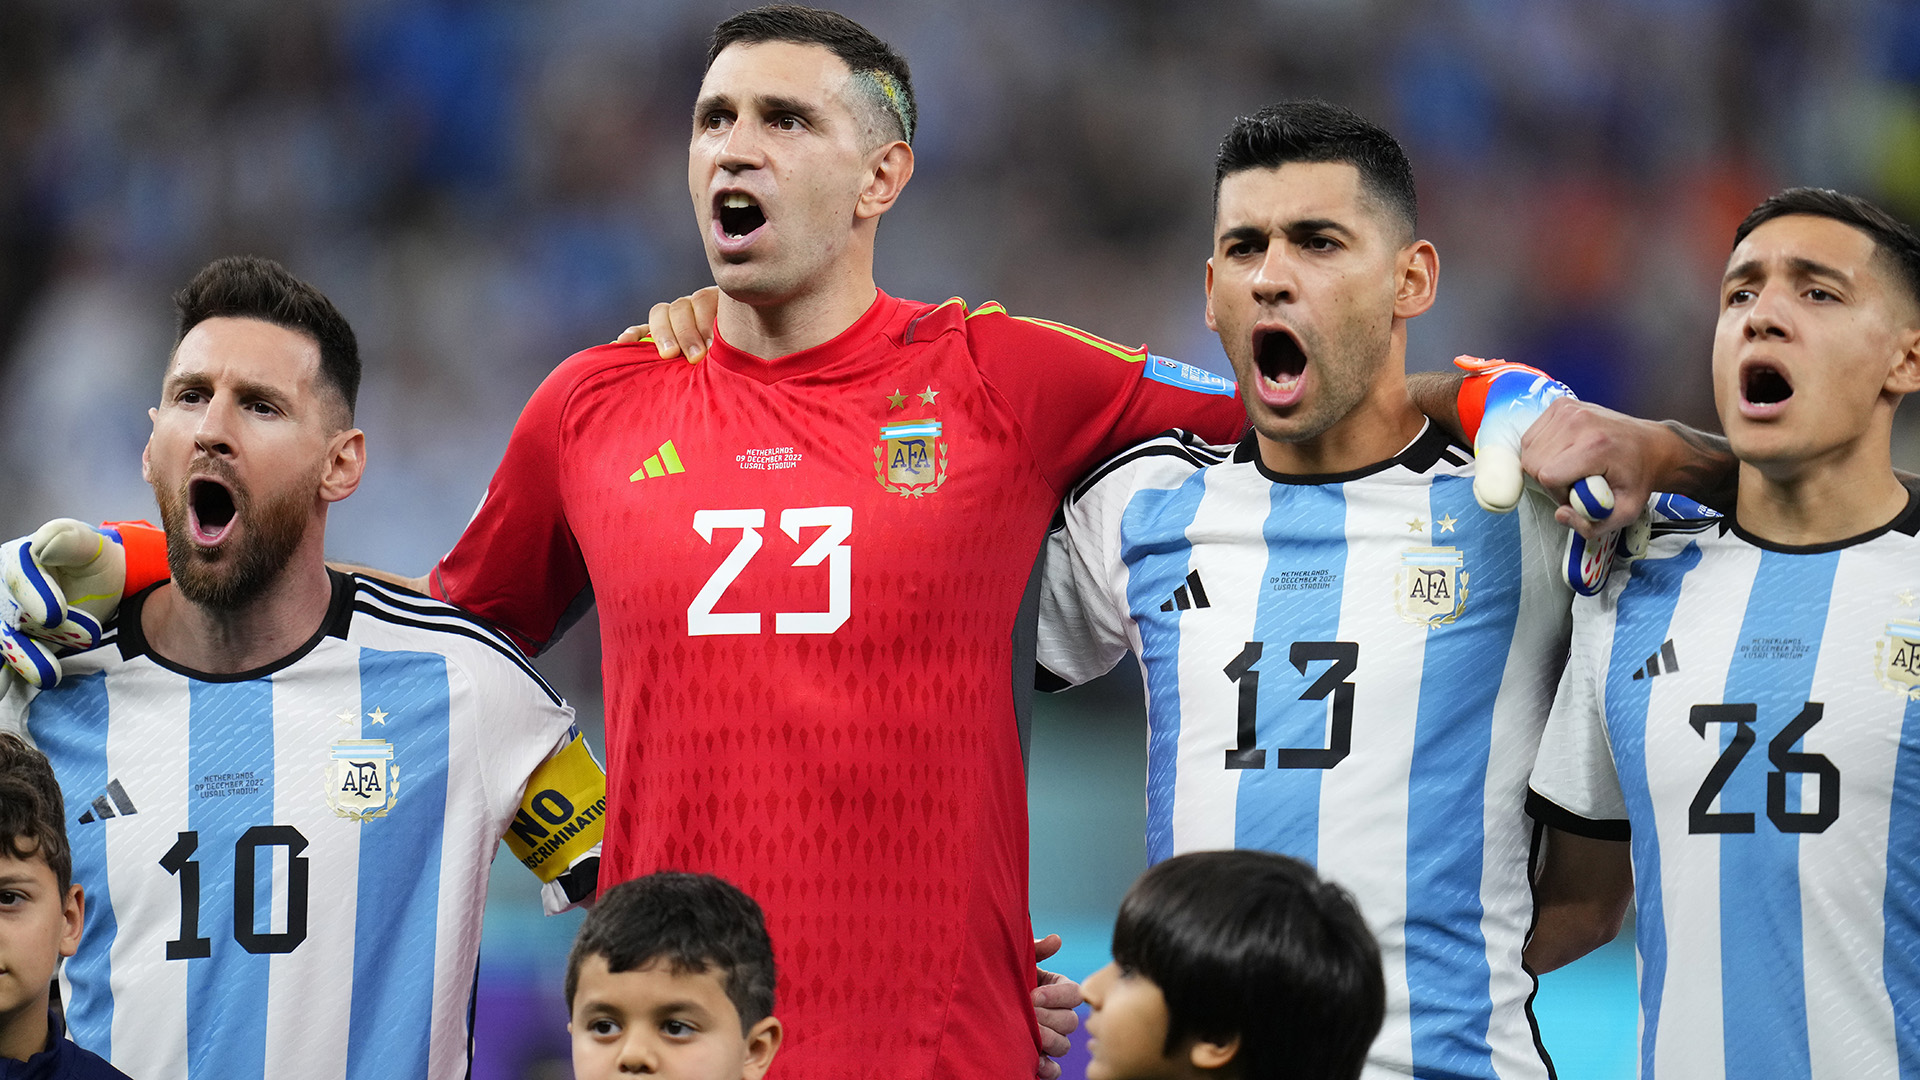 Reprezentacja Argentyny awansowała do finału mistrzostw świata, ale zgromadziła coś więcej niż tylko wynik sportowy (fot. AP)